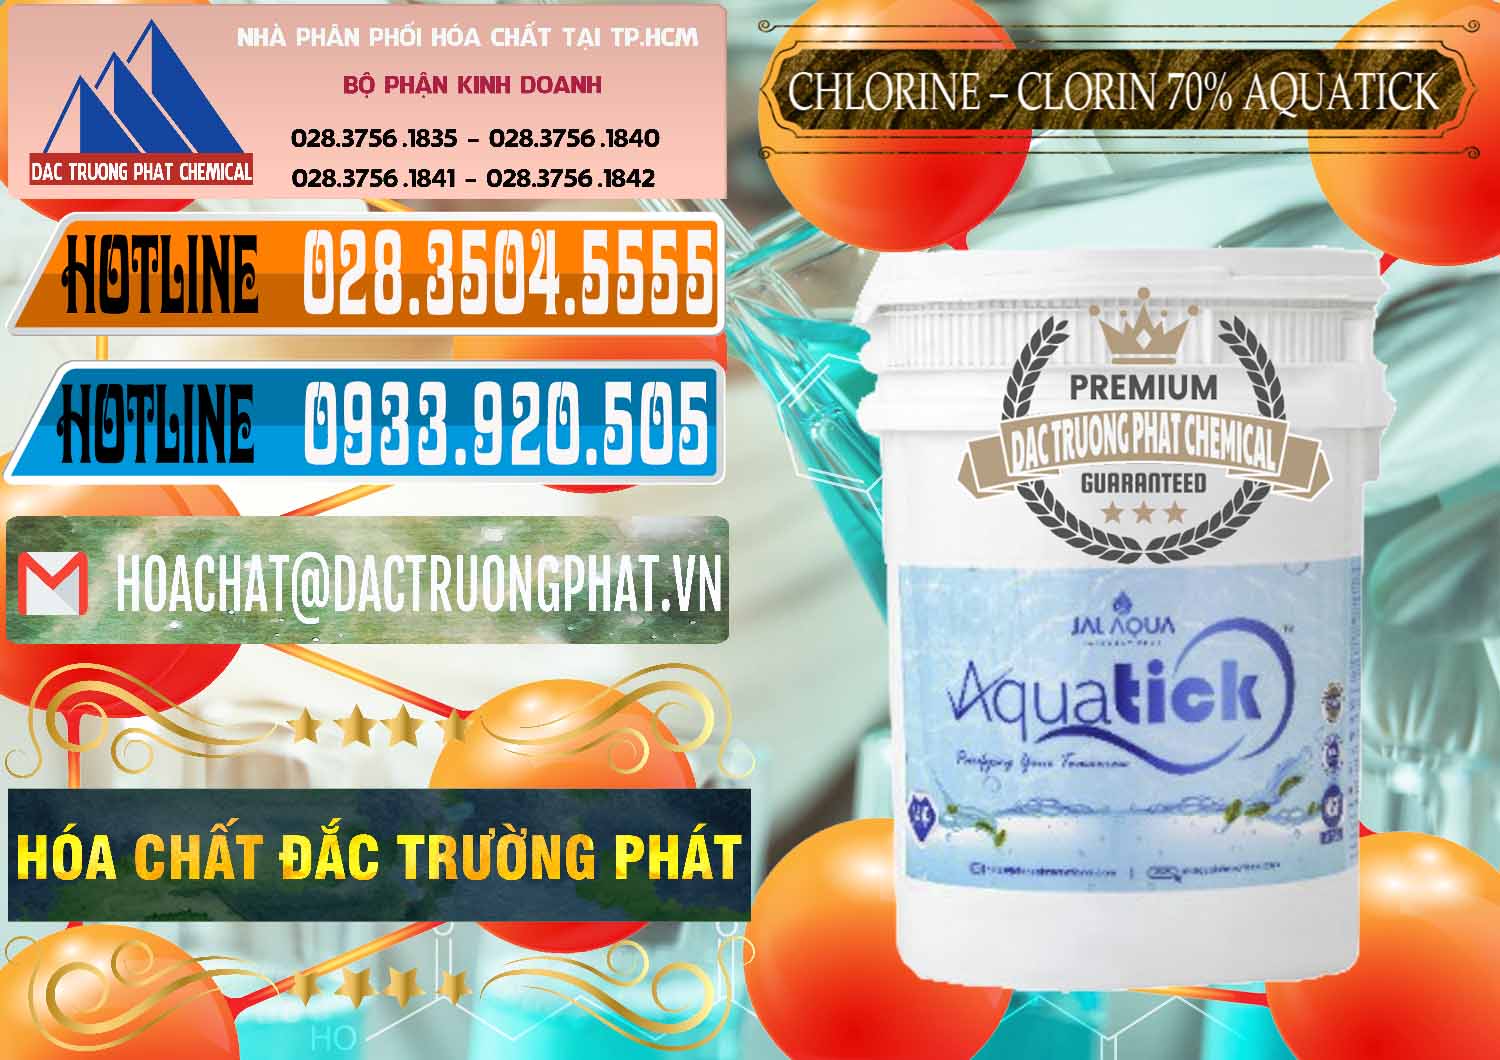 Cty chuyên bán _ cung cấp Chlorine – Clorin 70% Aquatick Thùng Cao Jal Aqua Ấn Độ India - 0237 - Nơi chuyên cung cấp - kinh doanh hóa chất tại TP.HCM - stmp.net